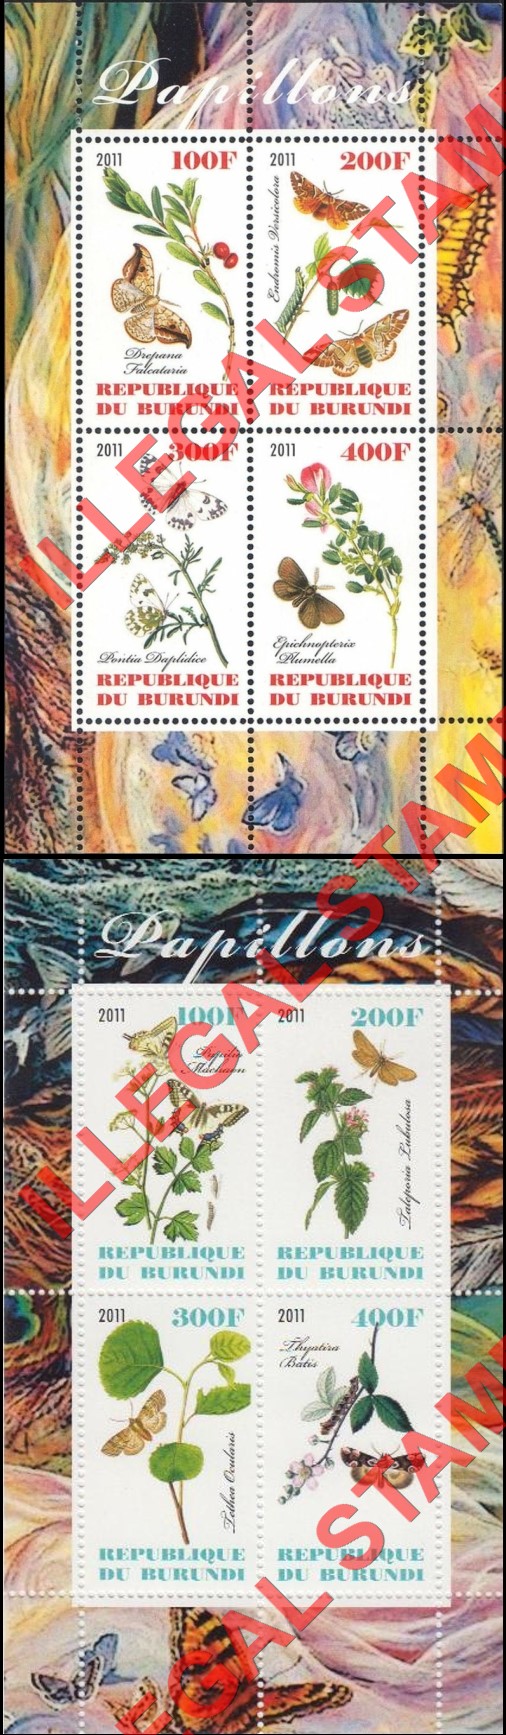 Burundi 2011 Butterflies Counterfeit Illegal Stamp Souvenir Sheets of 4 (Part 2)